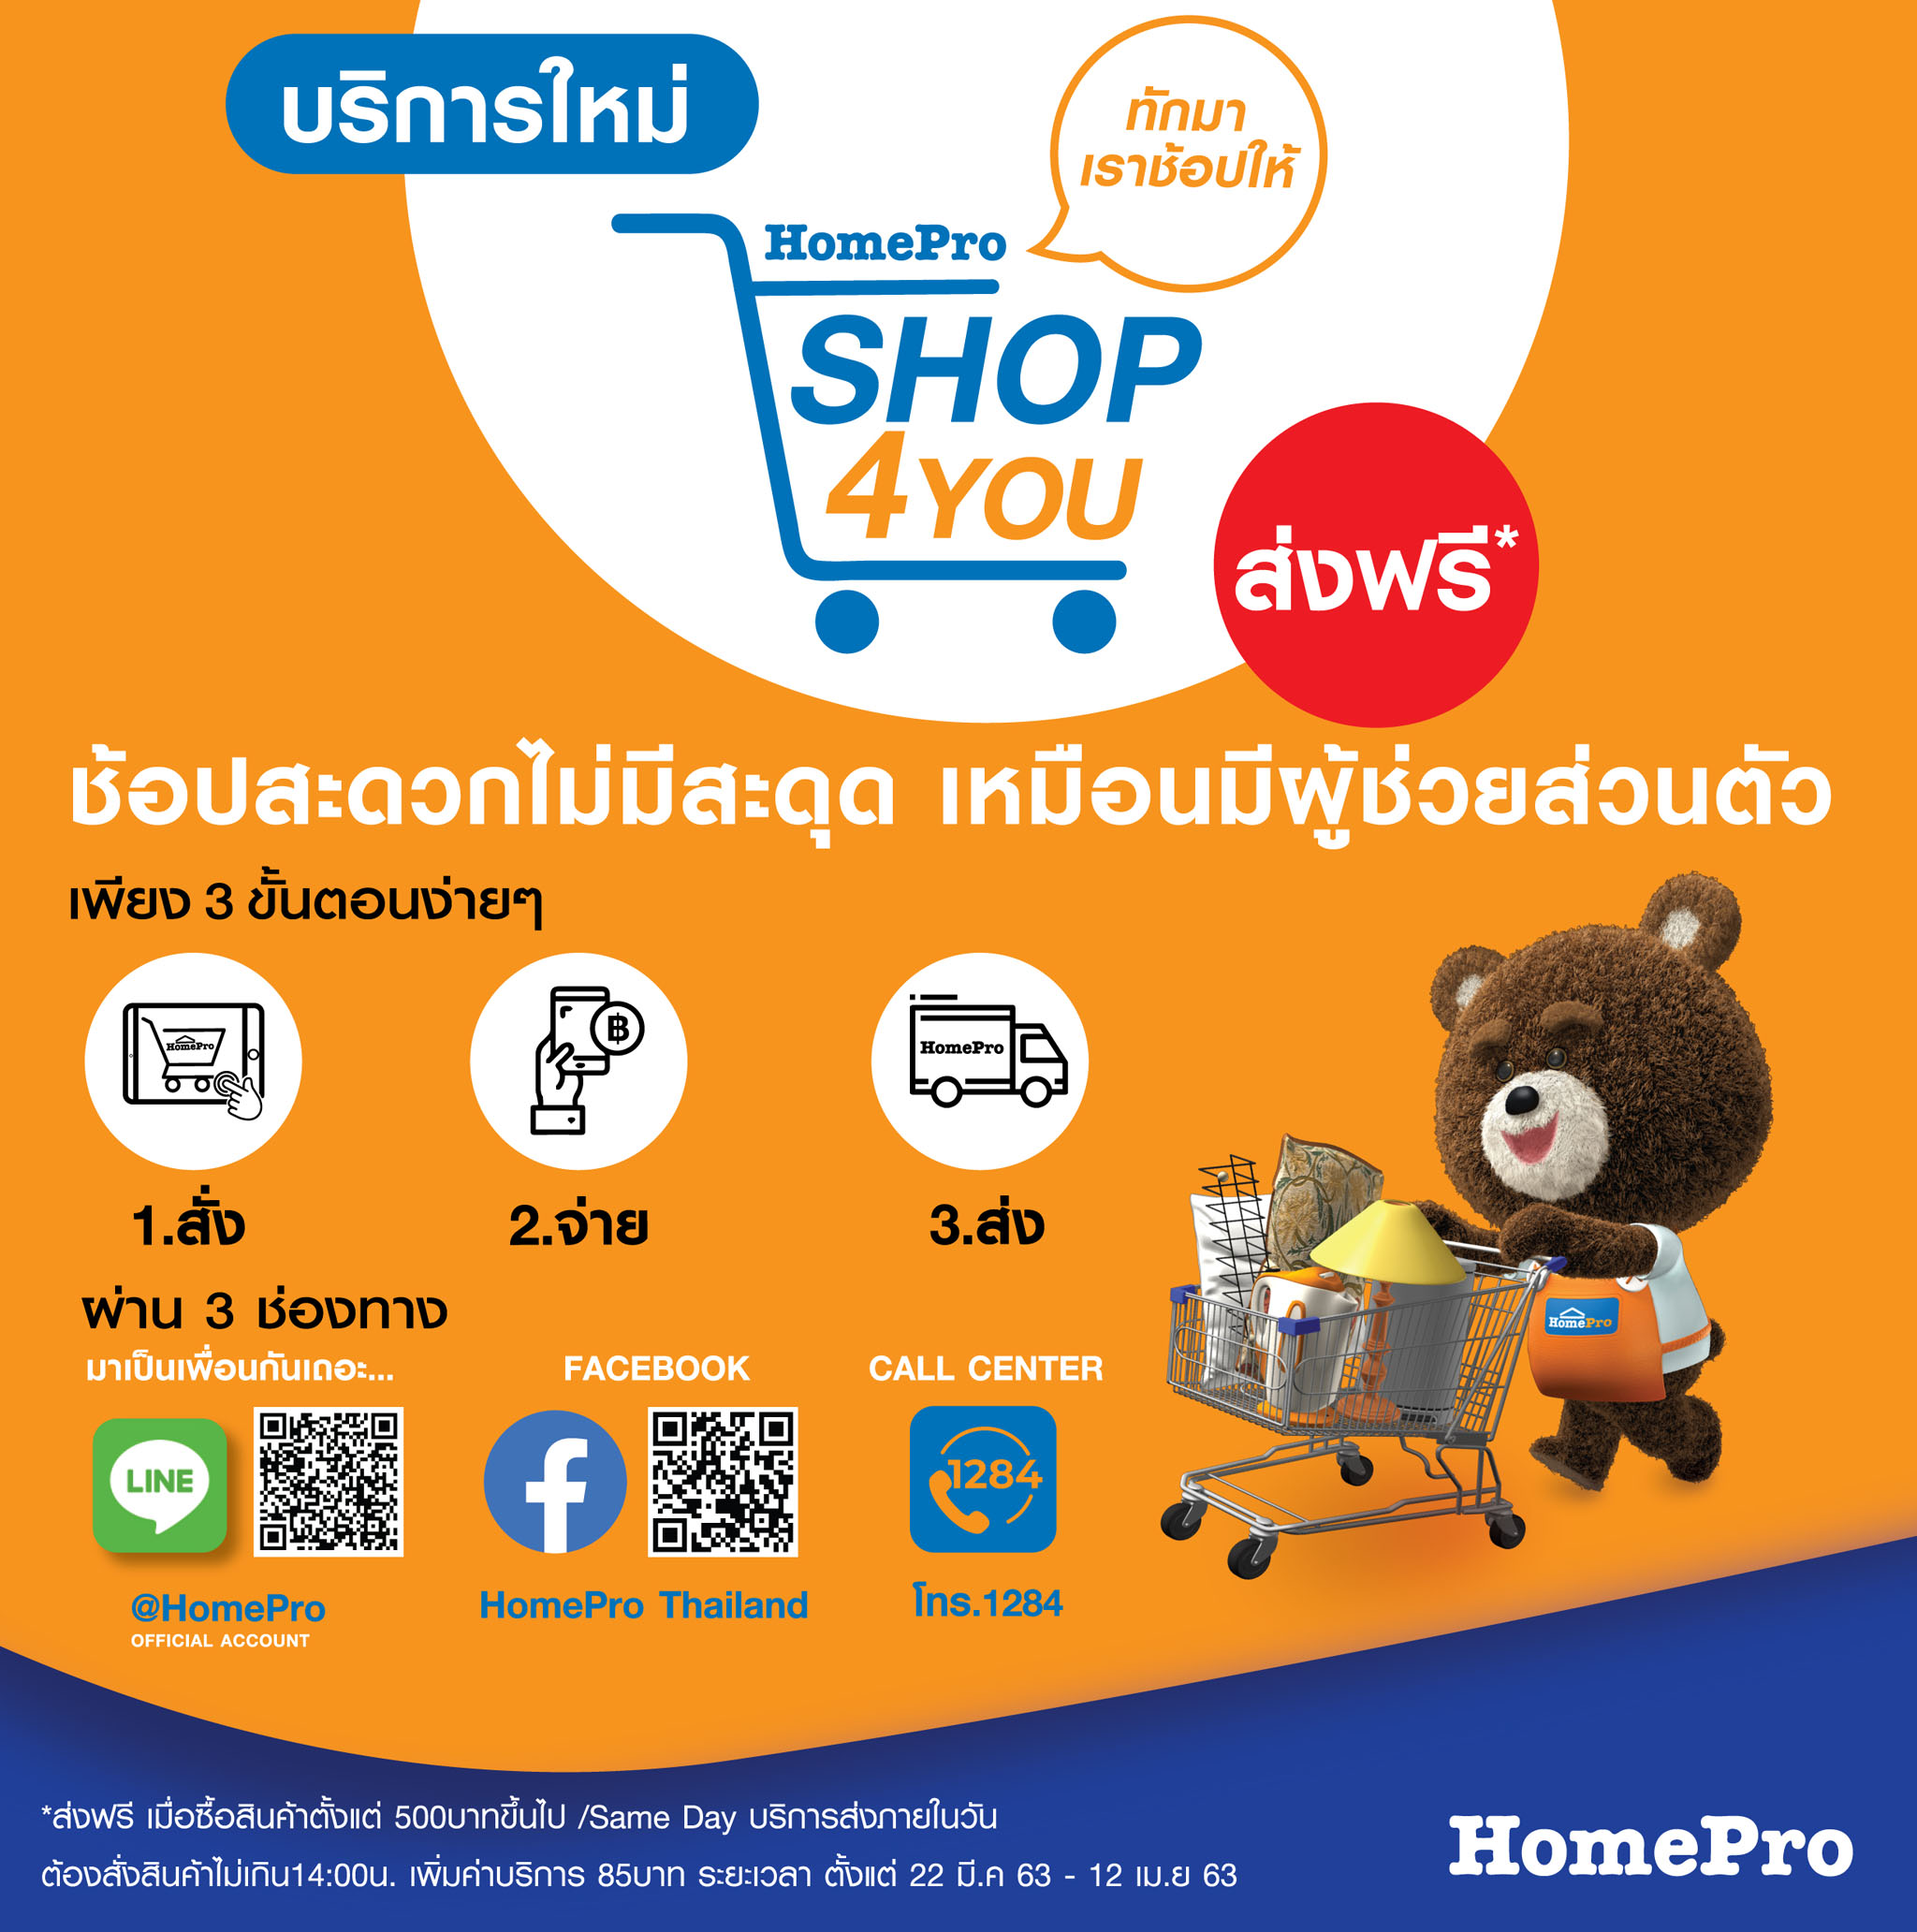 โฮมโปร เดินหน้ารุกช้อปออนไลน์ เปิดบริการใหม่ SHOP4YOU หลังห้างปิด ลูกค้าแอดไลน์ @Homepro ทักมาเราช้อปให้ เริ่ม 24 มี.ค.